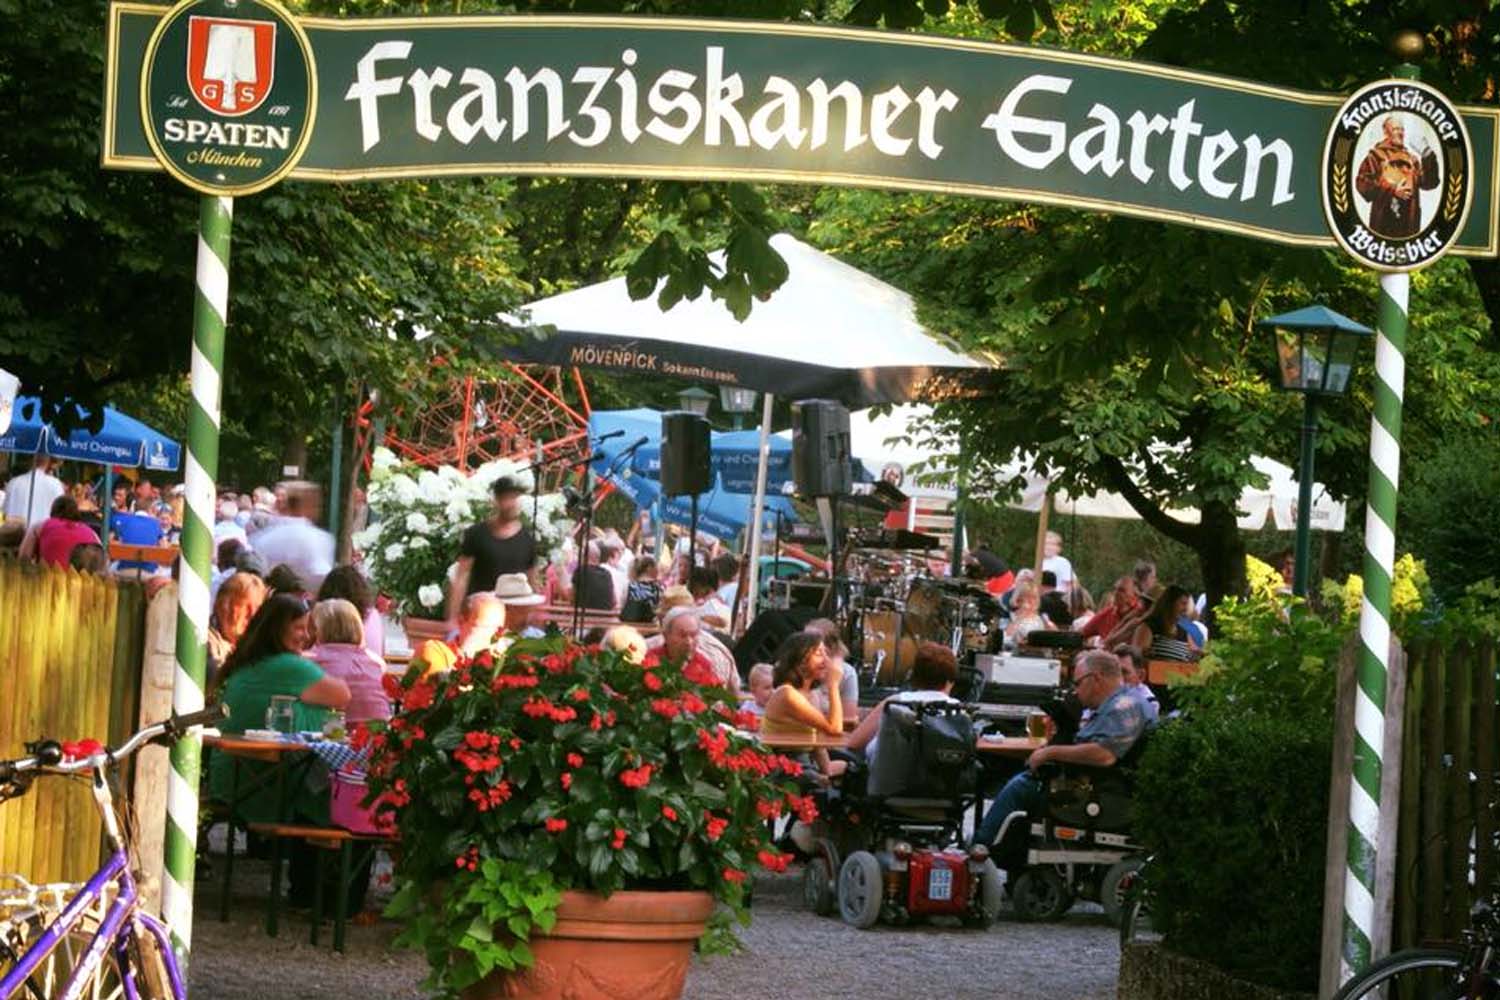 Franziskaner Garten